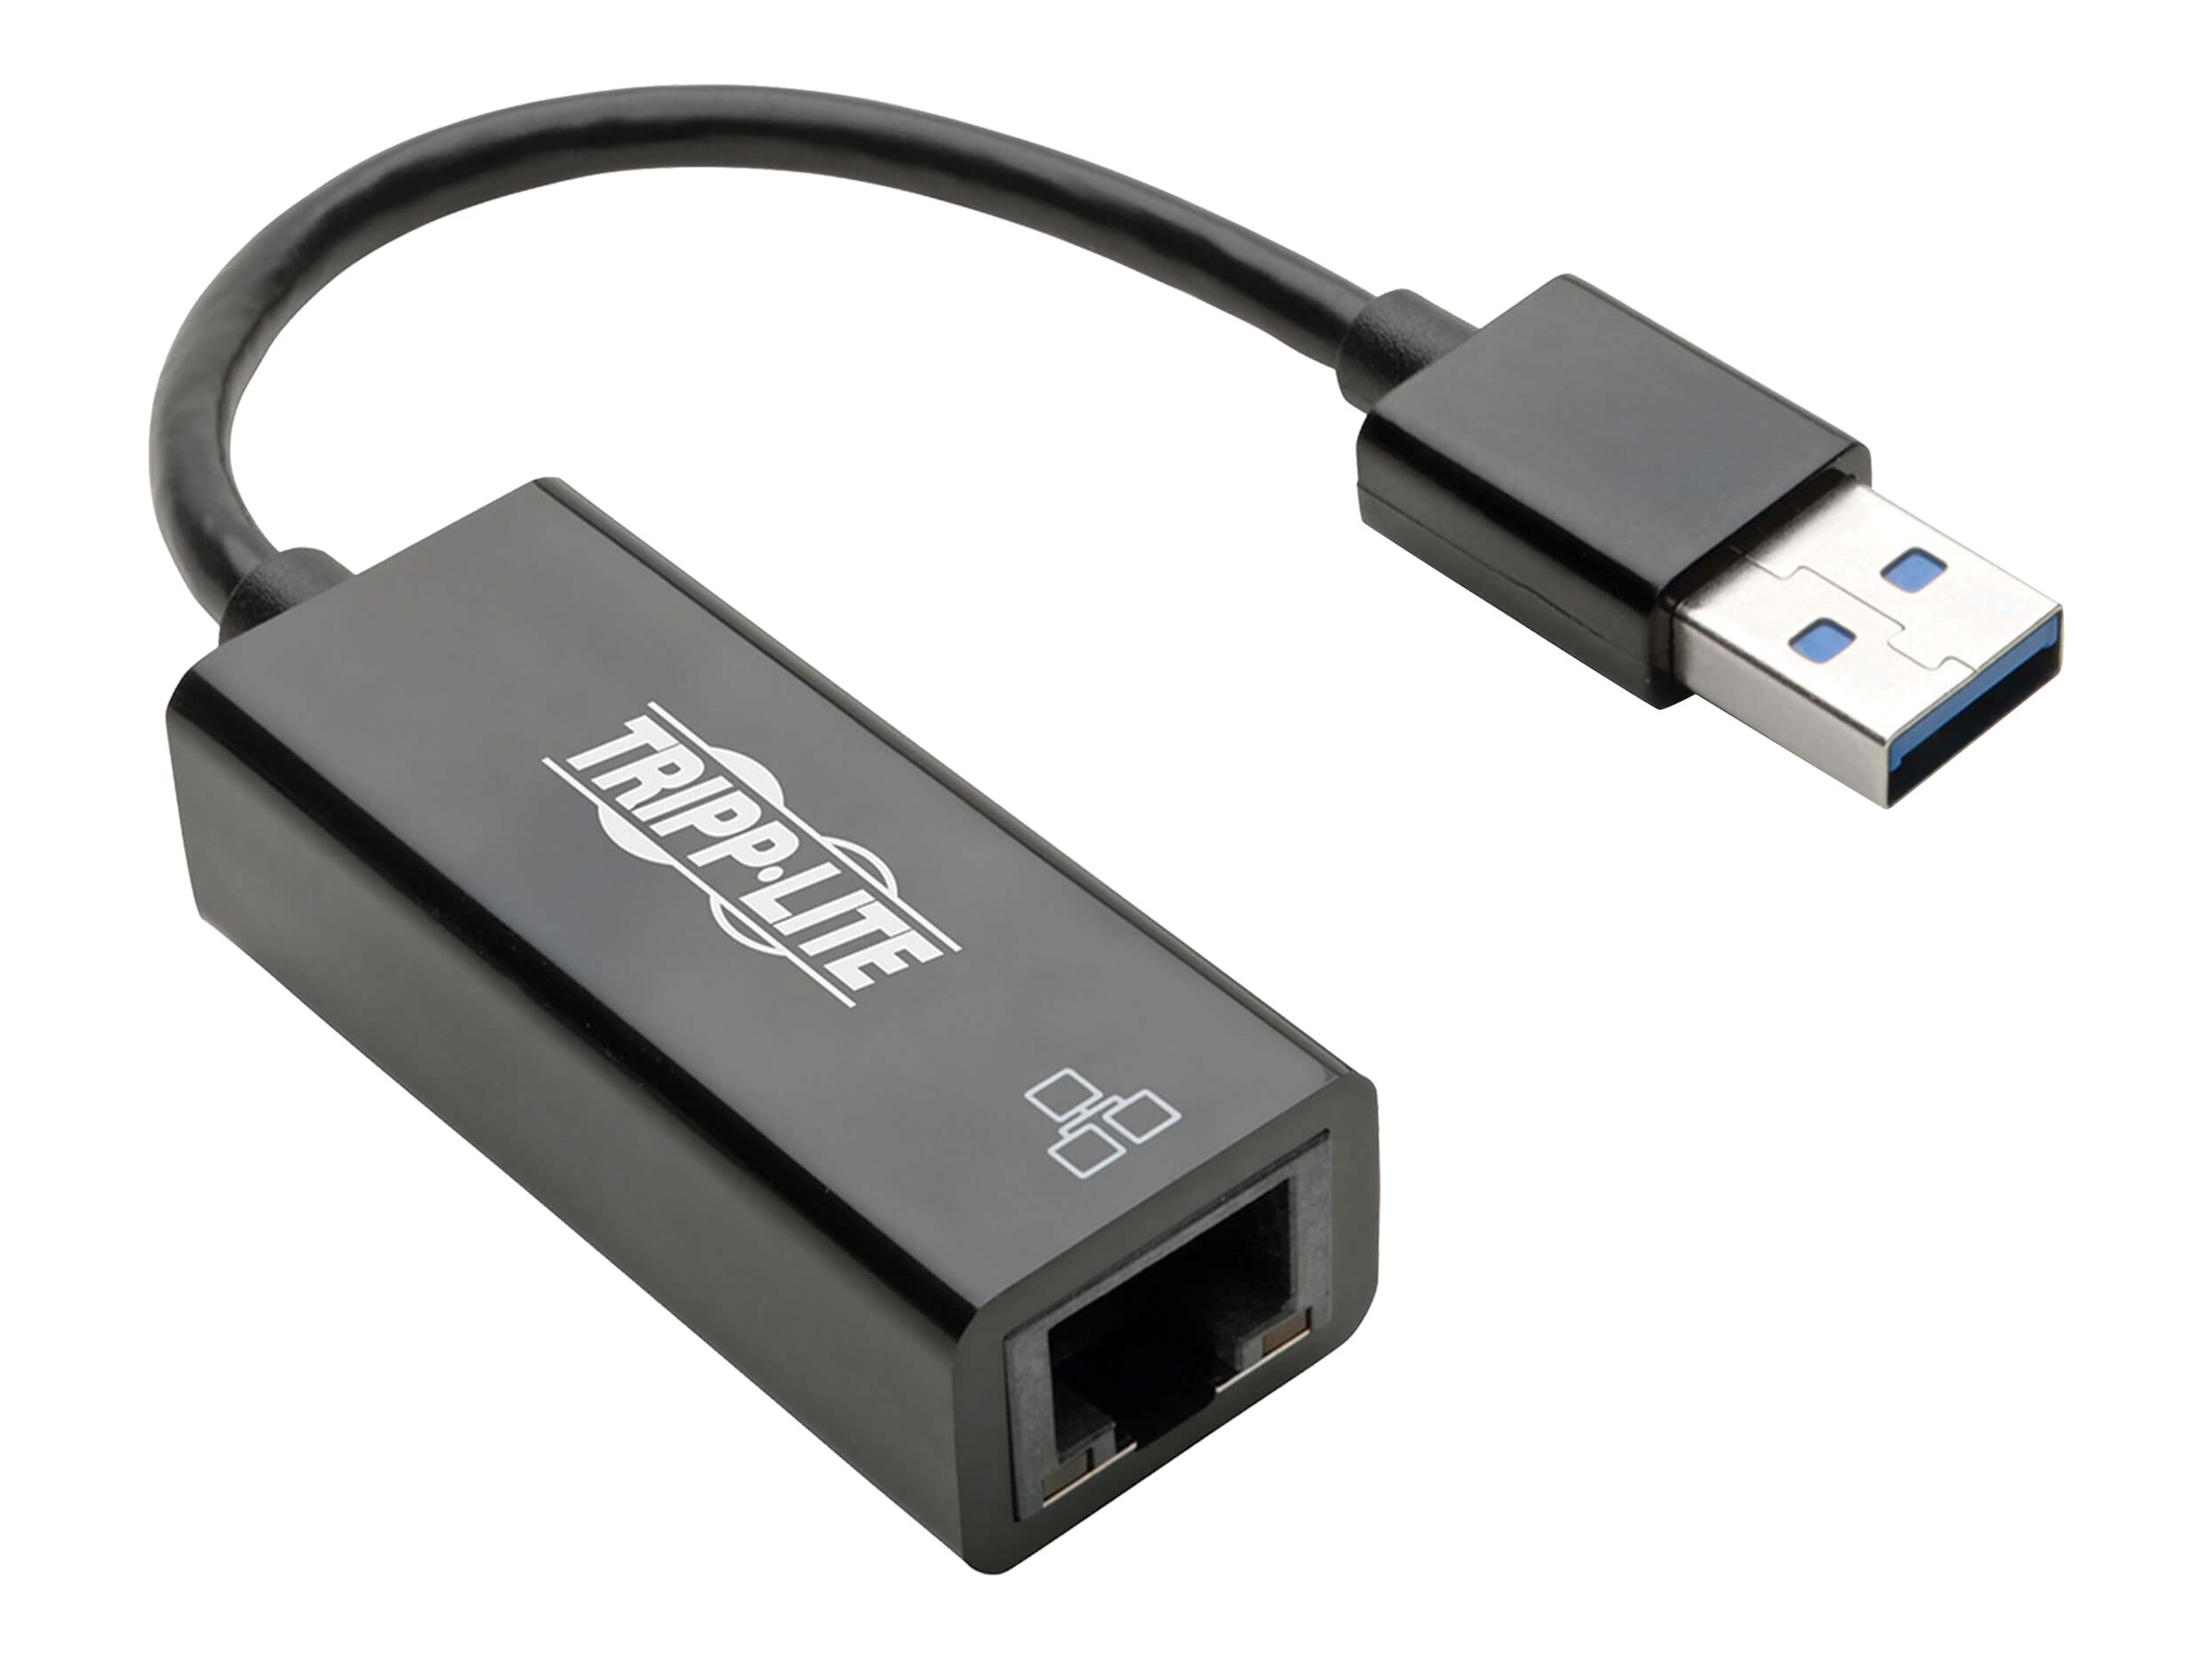 Tripp Lite USB 3.0 SuperSpeed to Gigabit Ethernet Adapter RJ45 10/100/1000 Mbps - Adaptateur réseau - USB 3.0 - Gigabit Ethernet - noir - U336-000-R - Cartes réseau USB